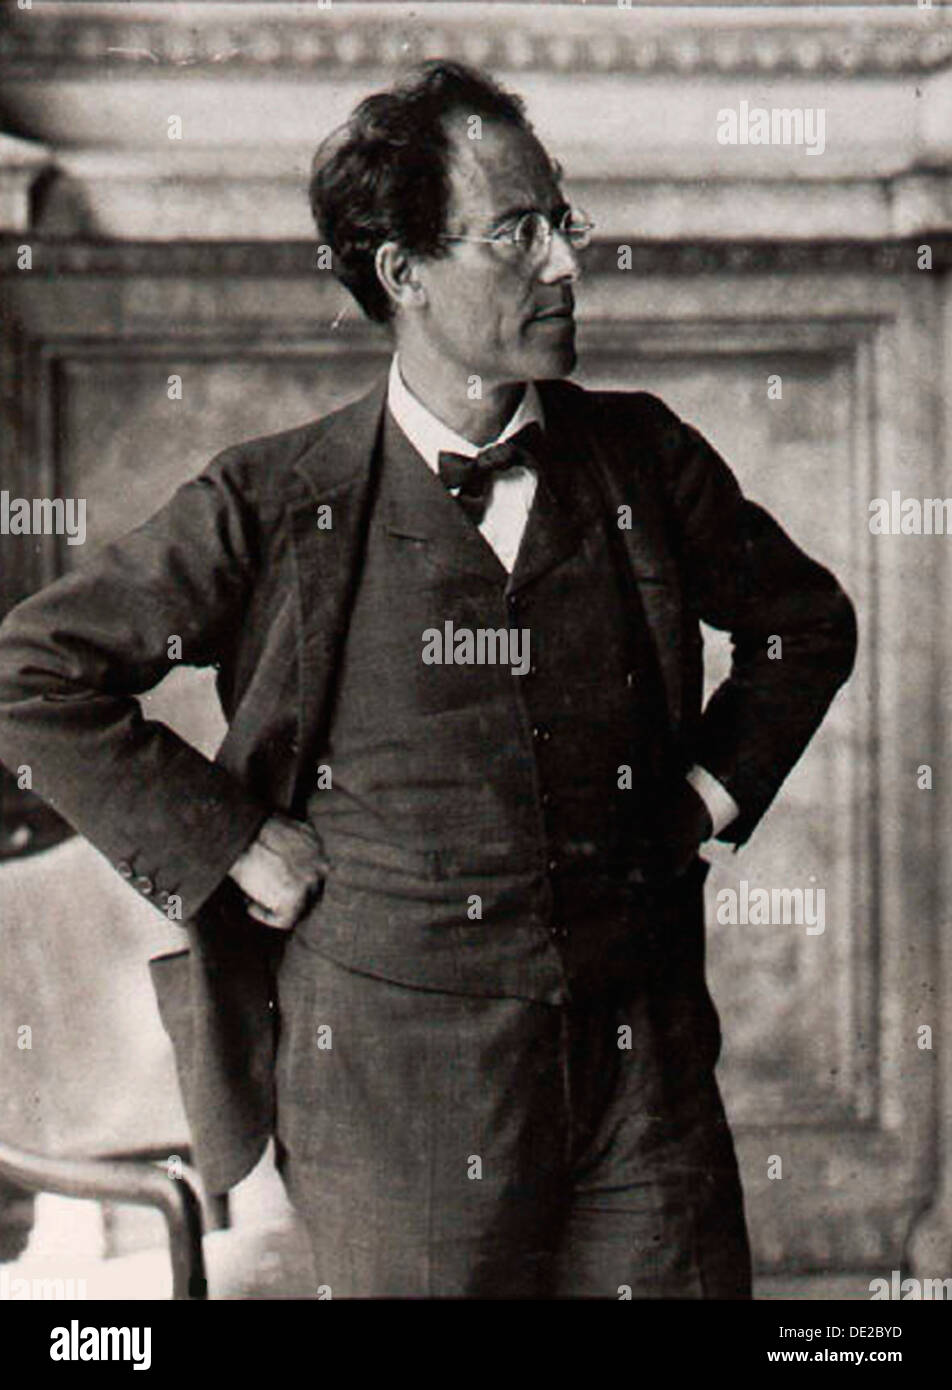 Gustav Mahler, compositeur et chef d'orchestre autrichien, des années 1900. Artiste : Anon Banque D'Images